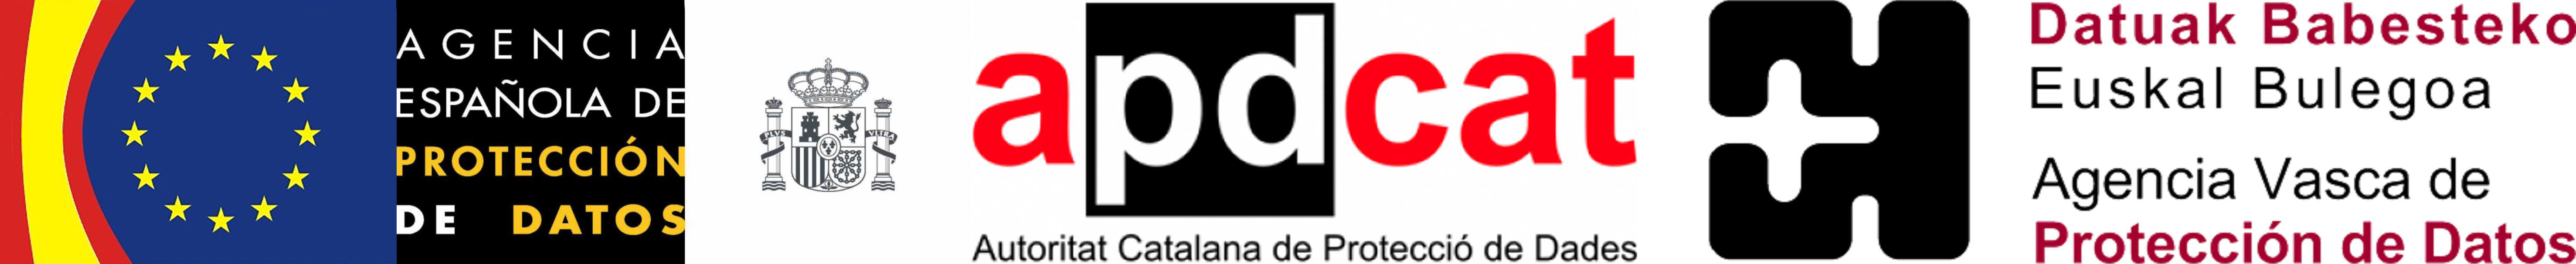 Logo Agencia Española de Protección de Datos, Autoritat Catalana de Protecció de Dades y Datuak Babesteko Euskal Bulegoa